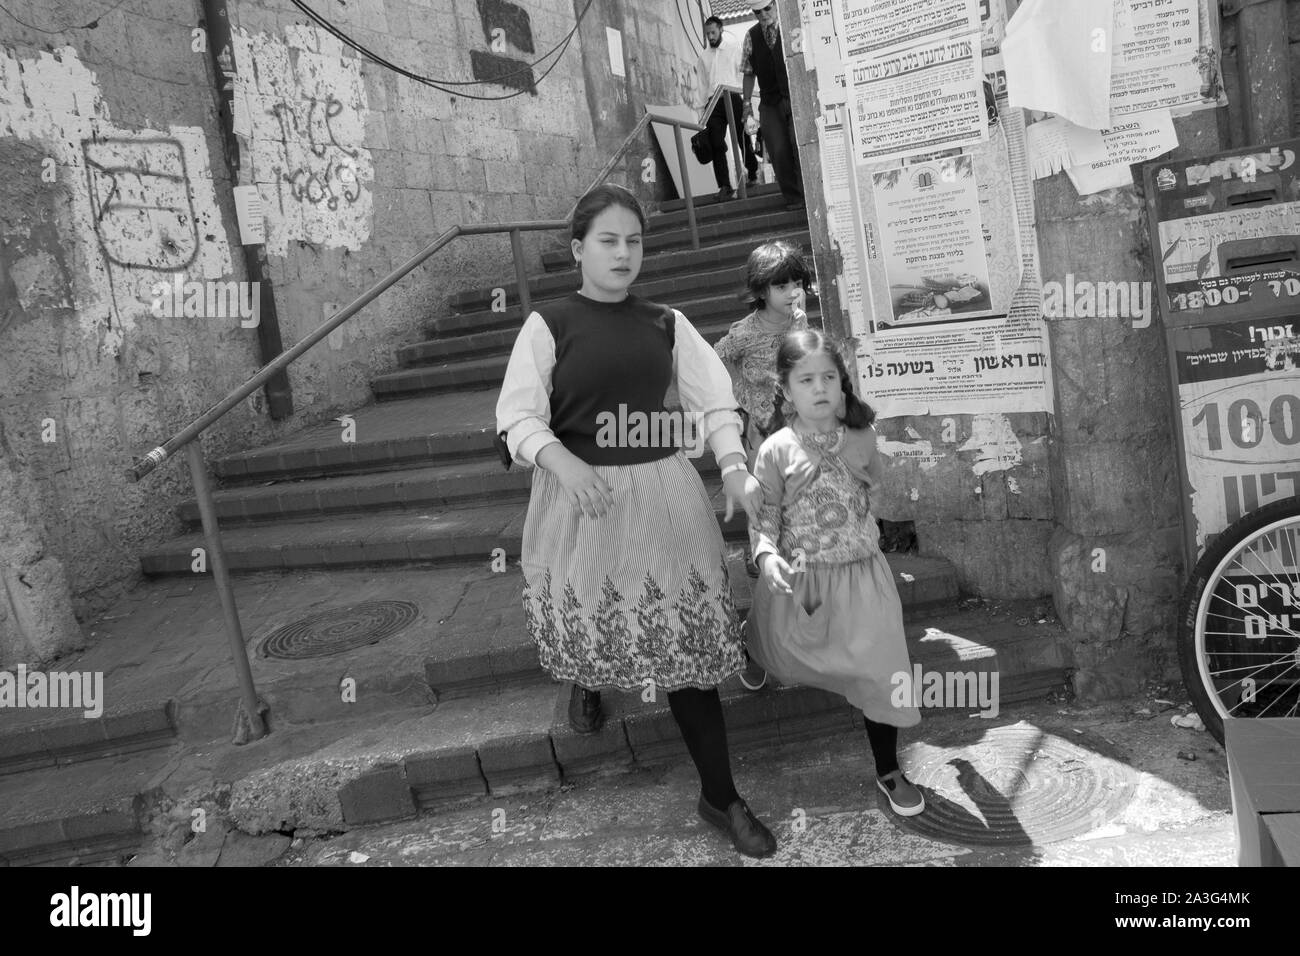 Mea Shearim Gerusalemme Ovest, Israele Foto Stock